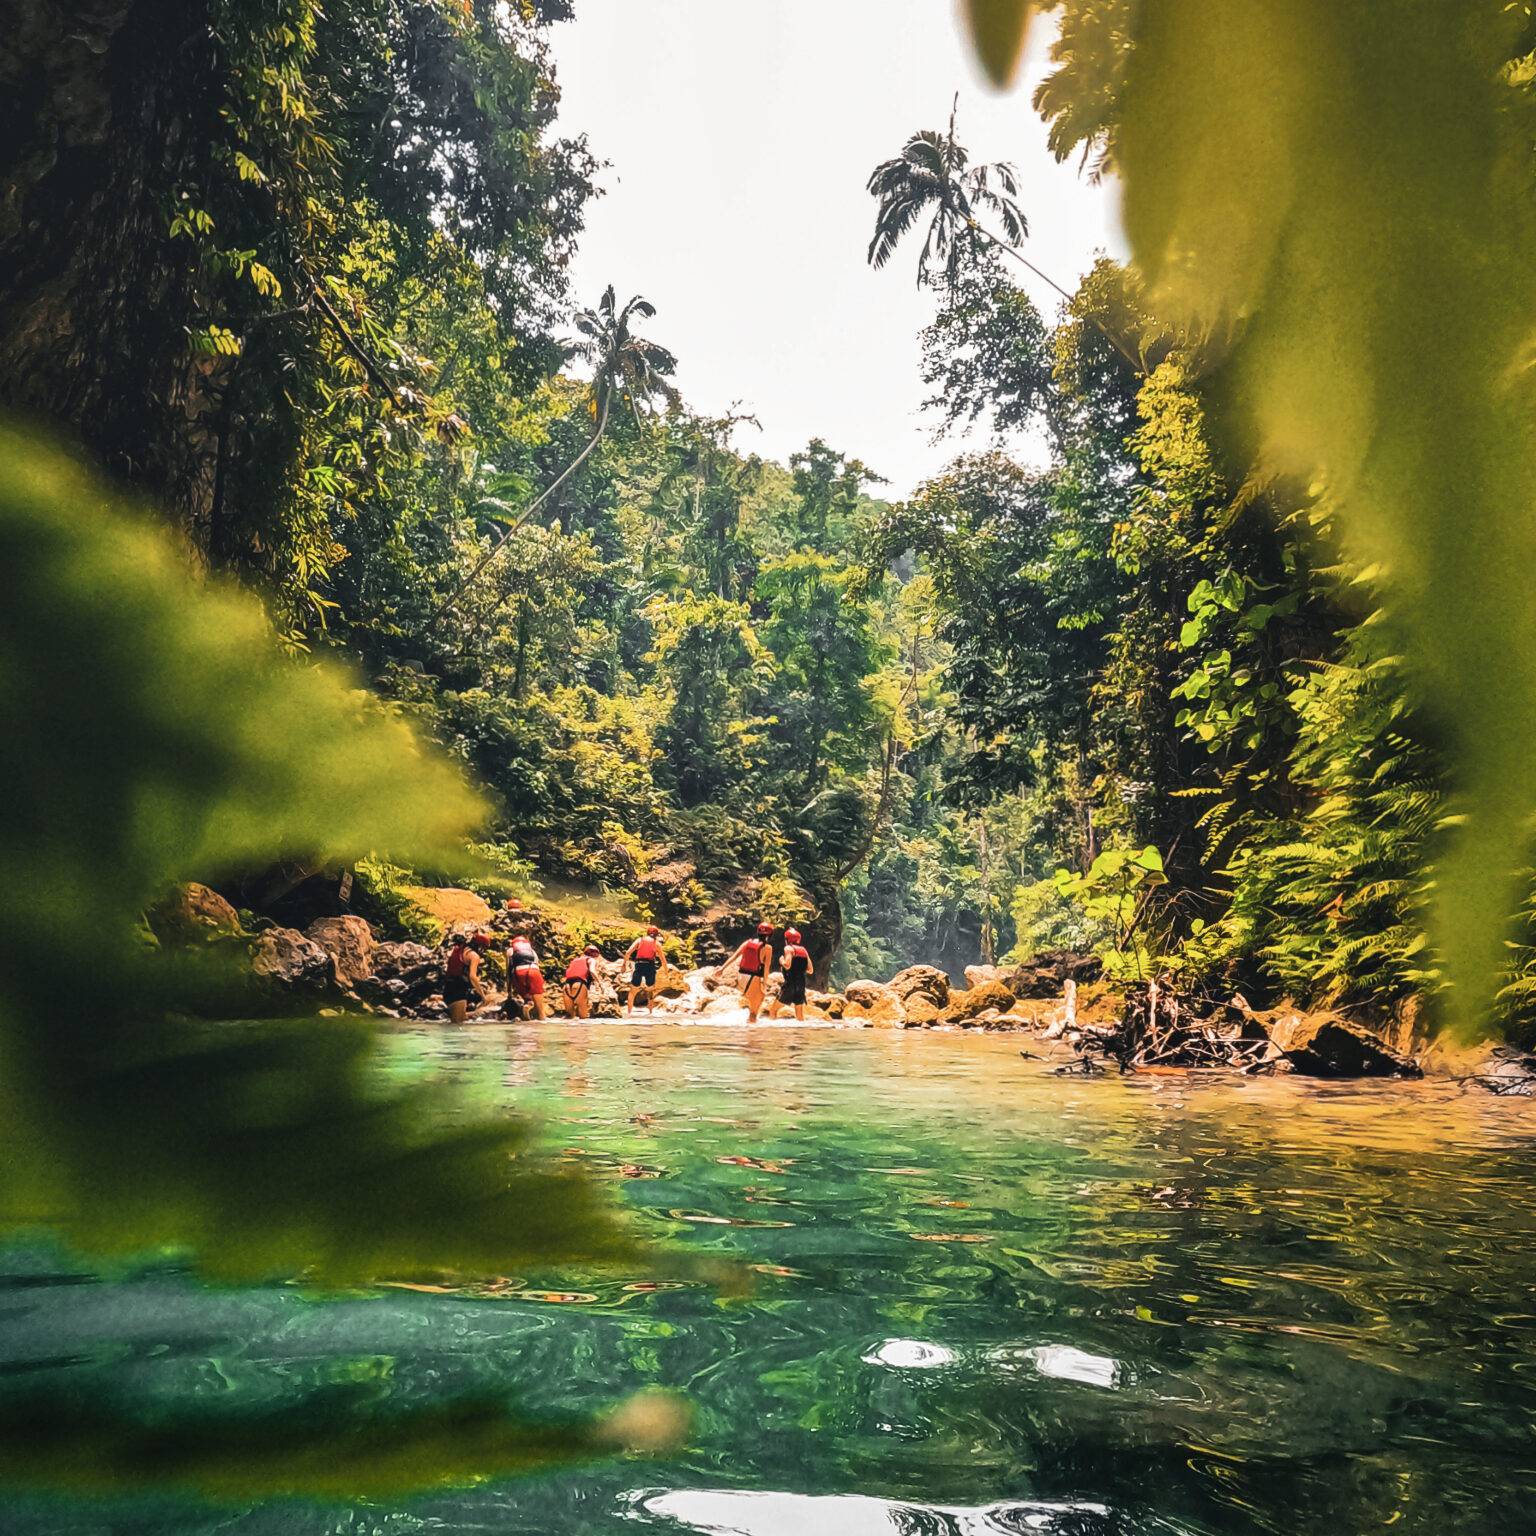 Menschen gehen durchs Wasser umgeben von wundervoller grüner Natur.